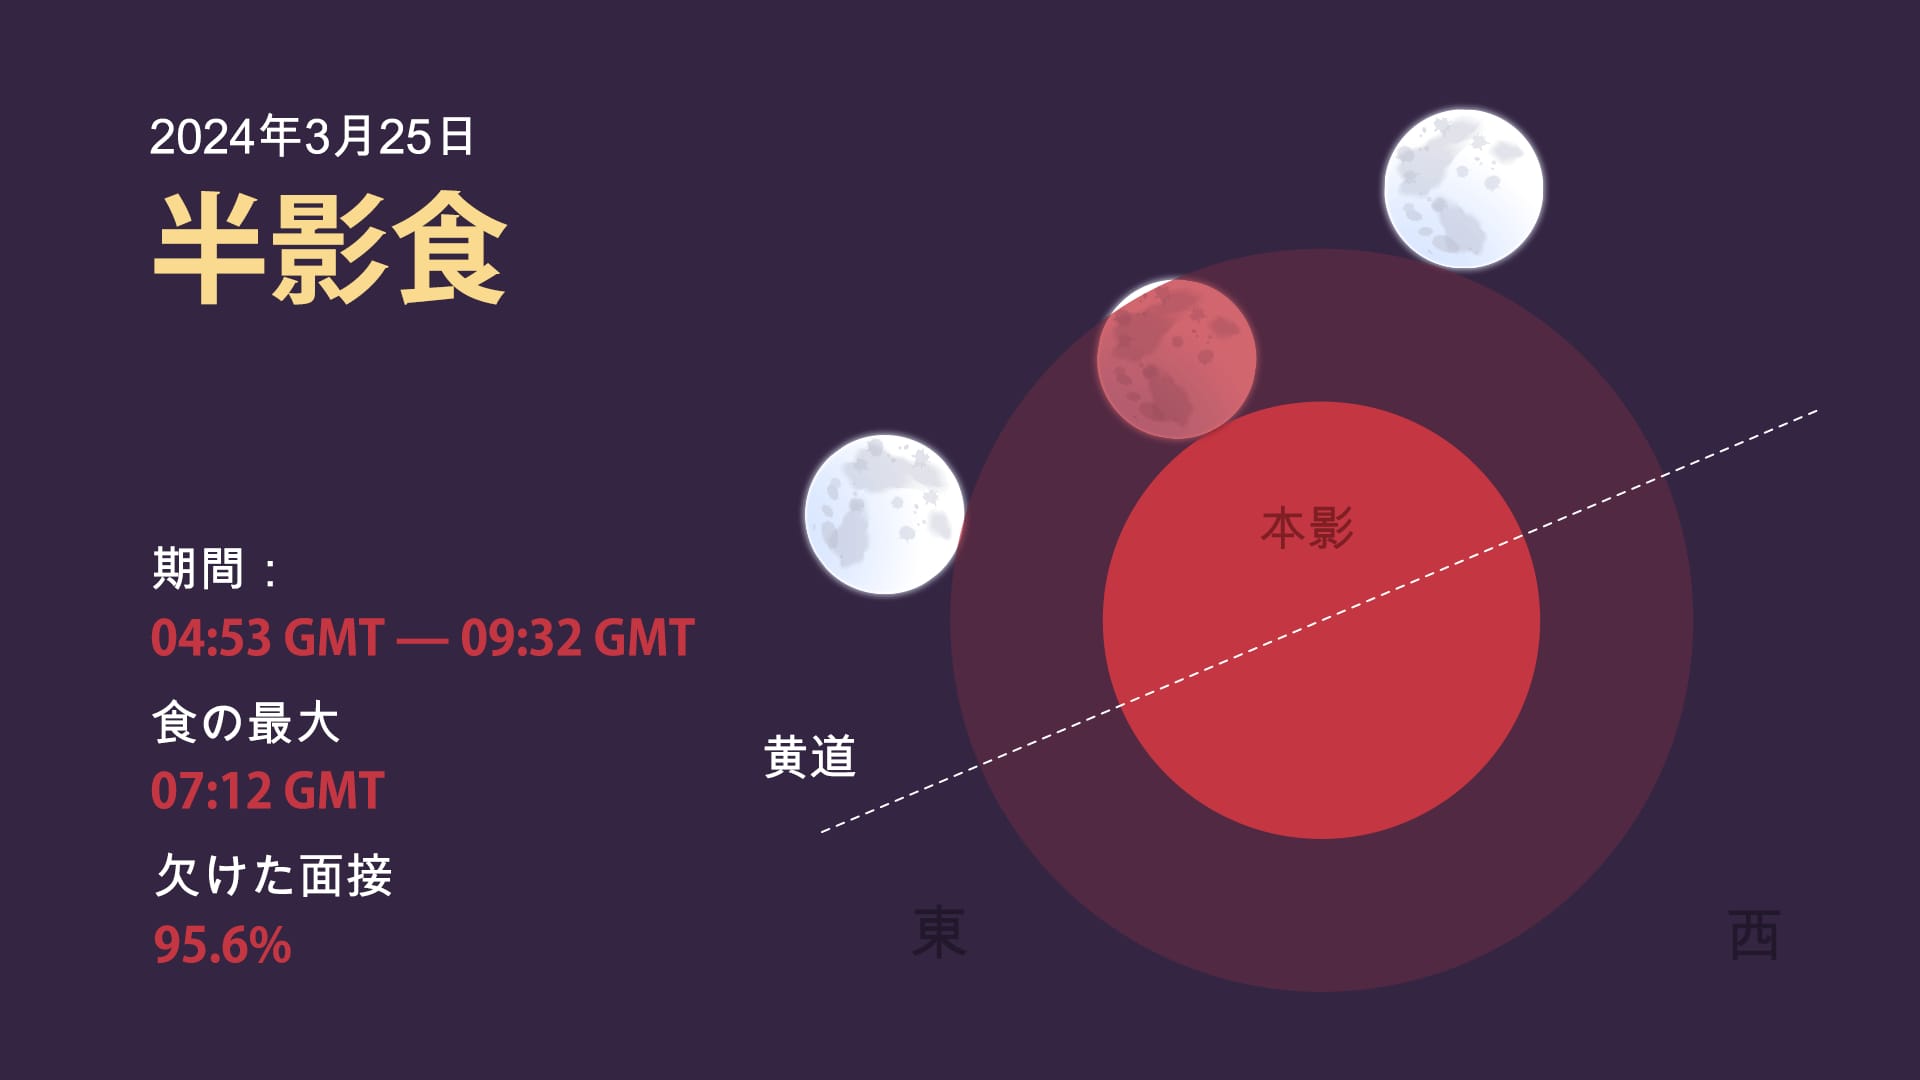 Lunar eclipse on March 2024: Timeline